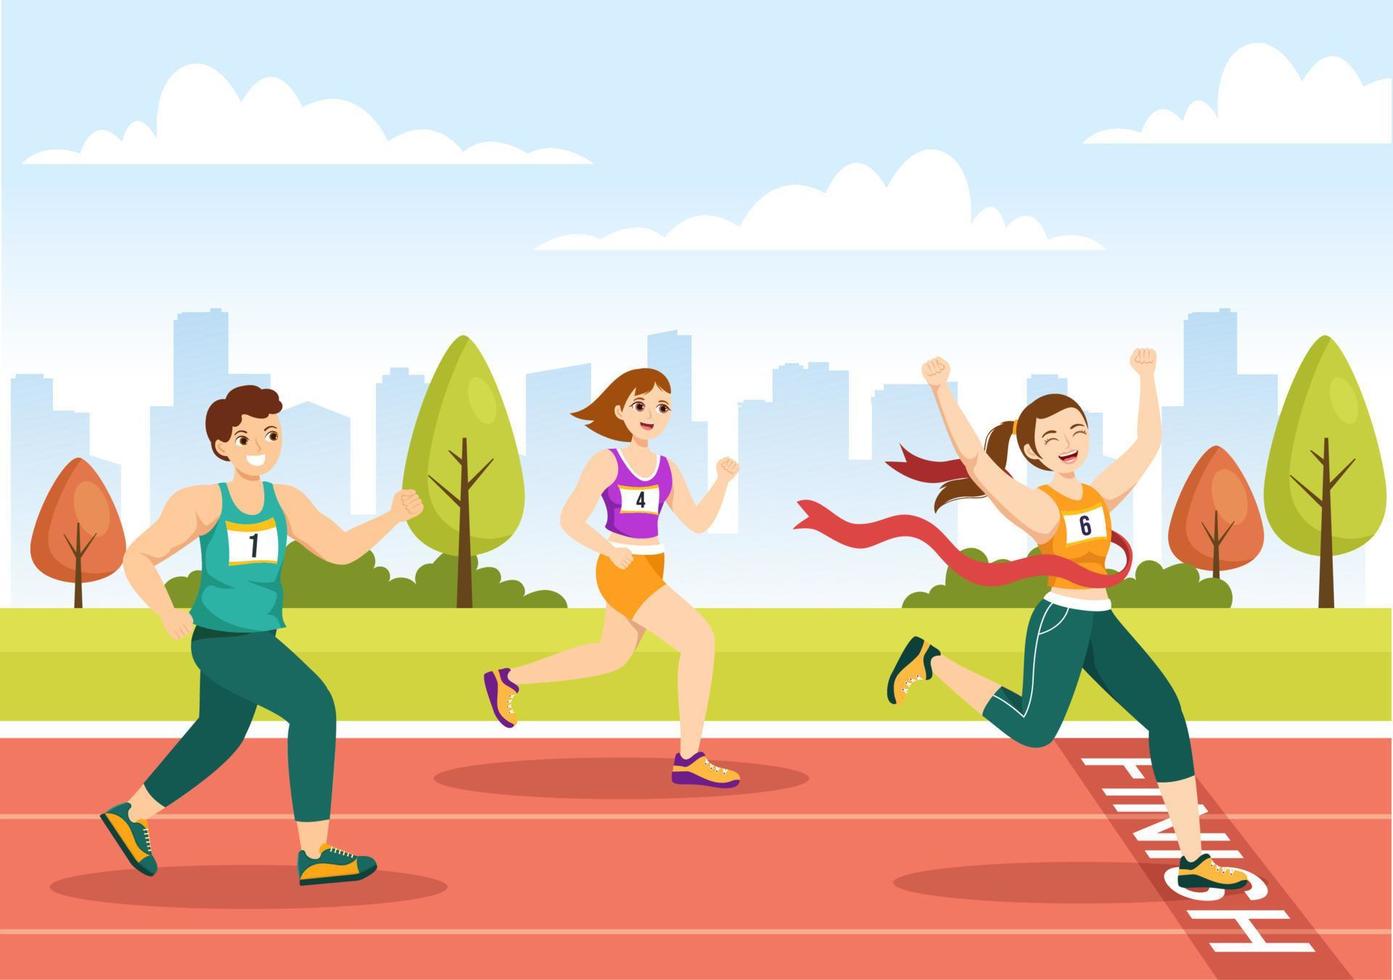 ilustración de carrera de maratón con gente corriendo, trotando en un torneo deportivo y corriendo para llegar a la línea de meta en una plantilla plana dibujada a mano vector